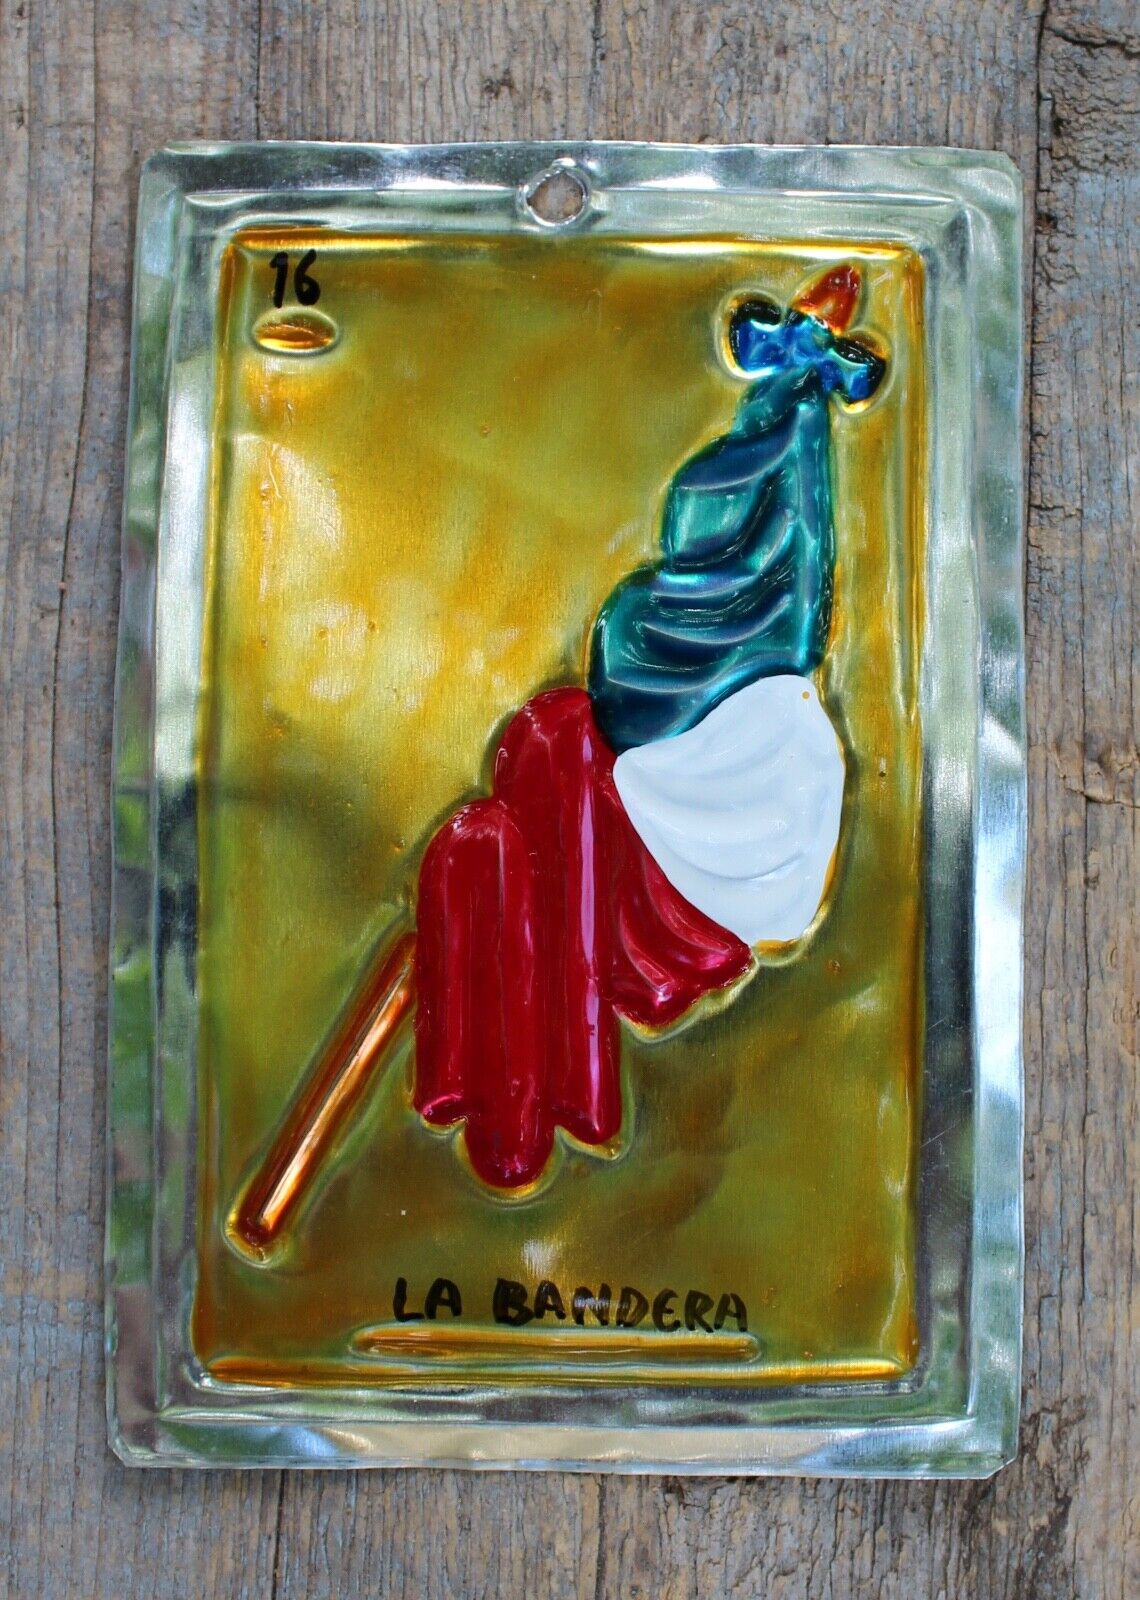 Tin Loteria Card #16 La Bandera The Flag Mexican Folk Art Handmade Oaxaca Mexico